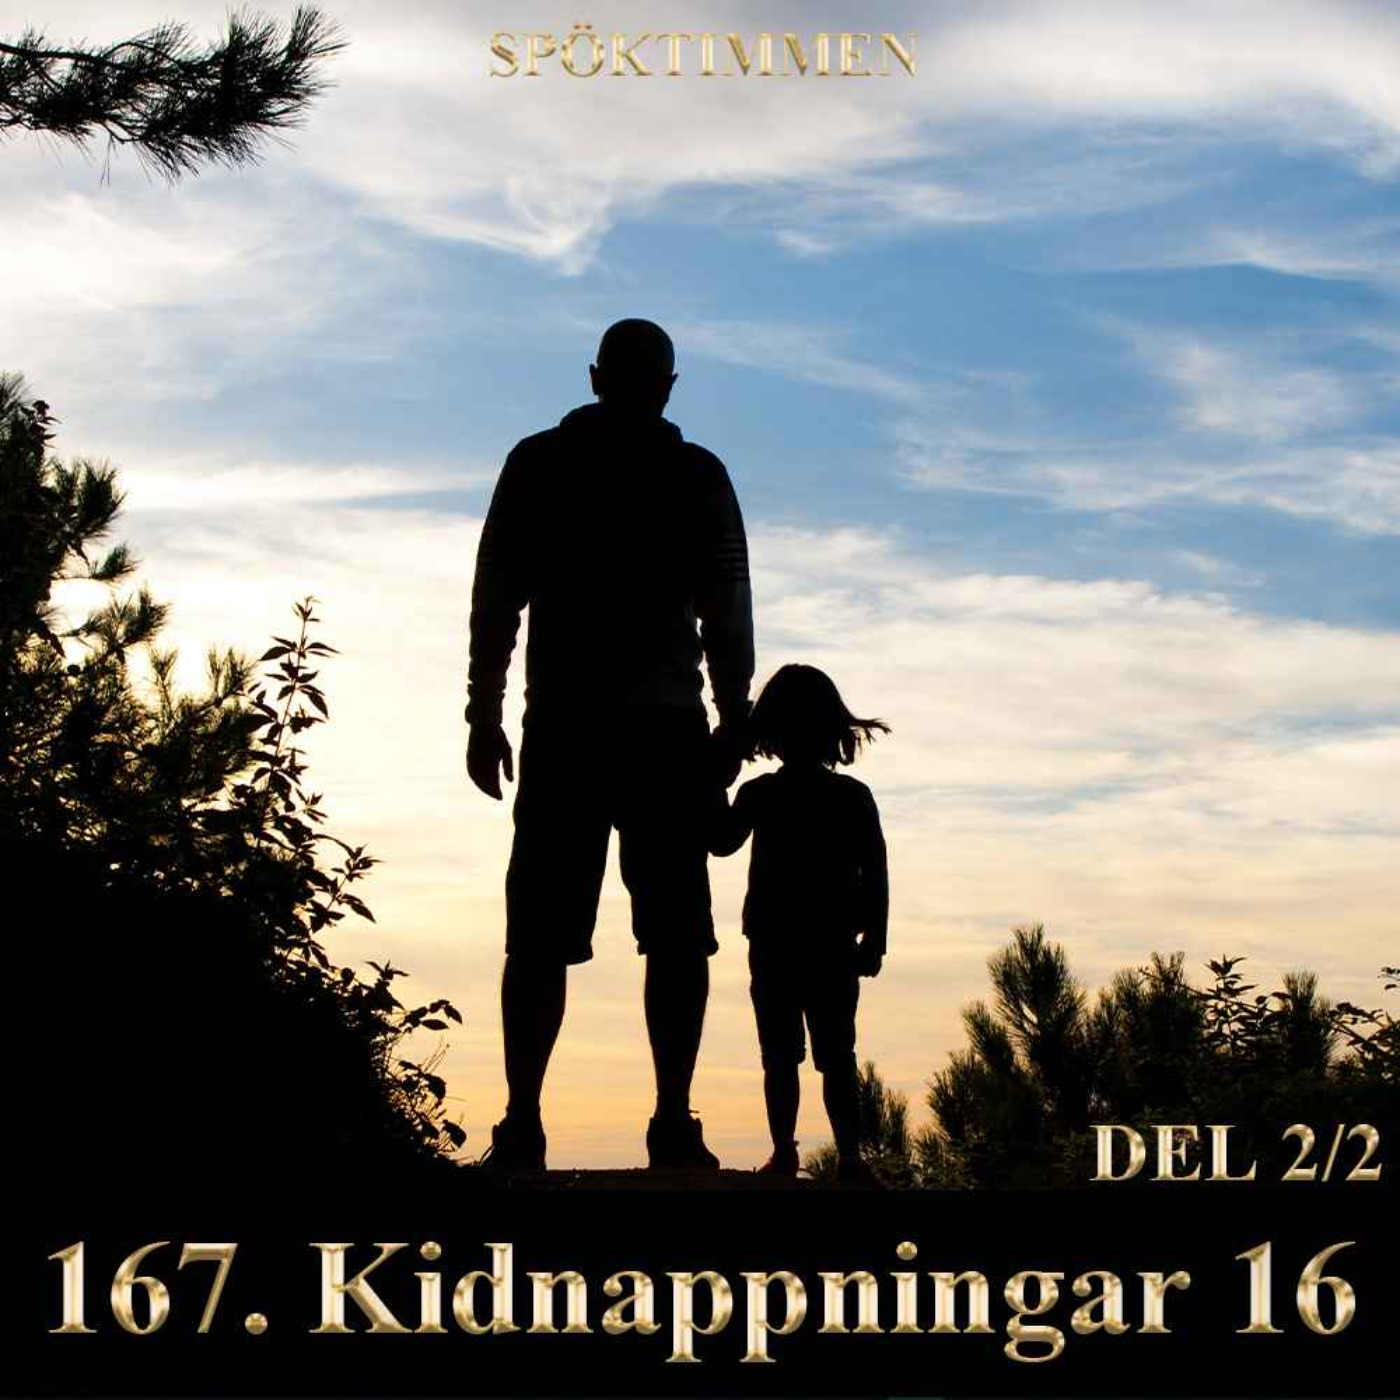 Kidnappningar 16 – Del 2